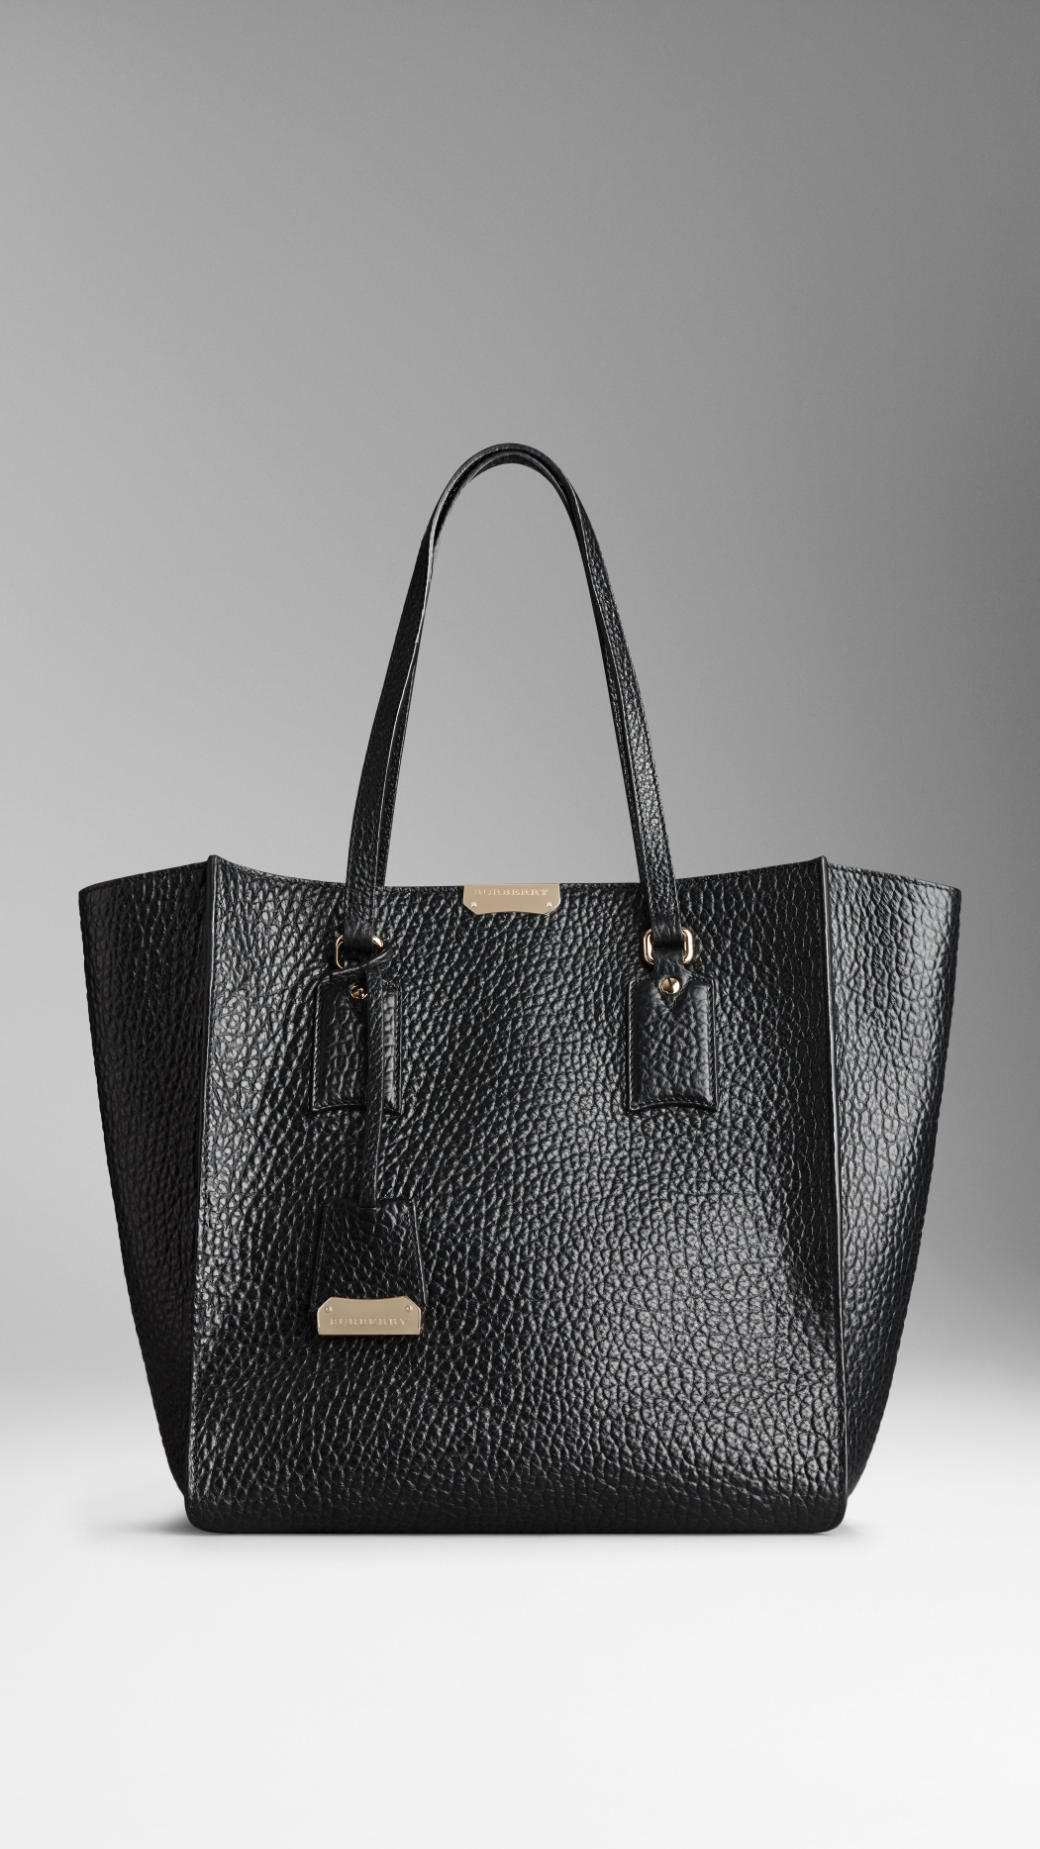 Lyst - Burberry Medium Signature Grain Leather Tote Bag in Black